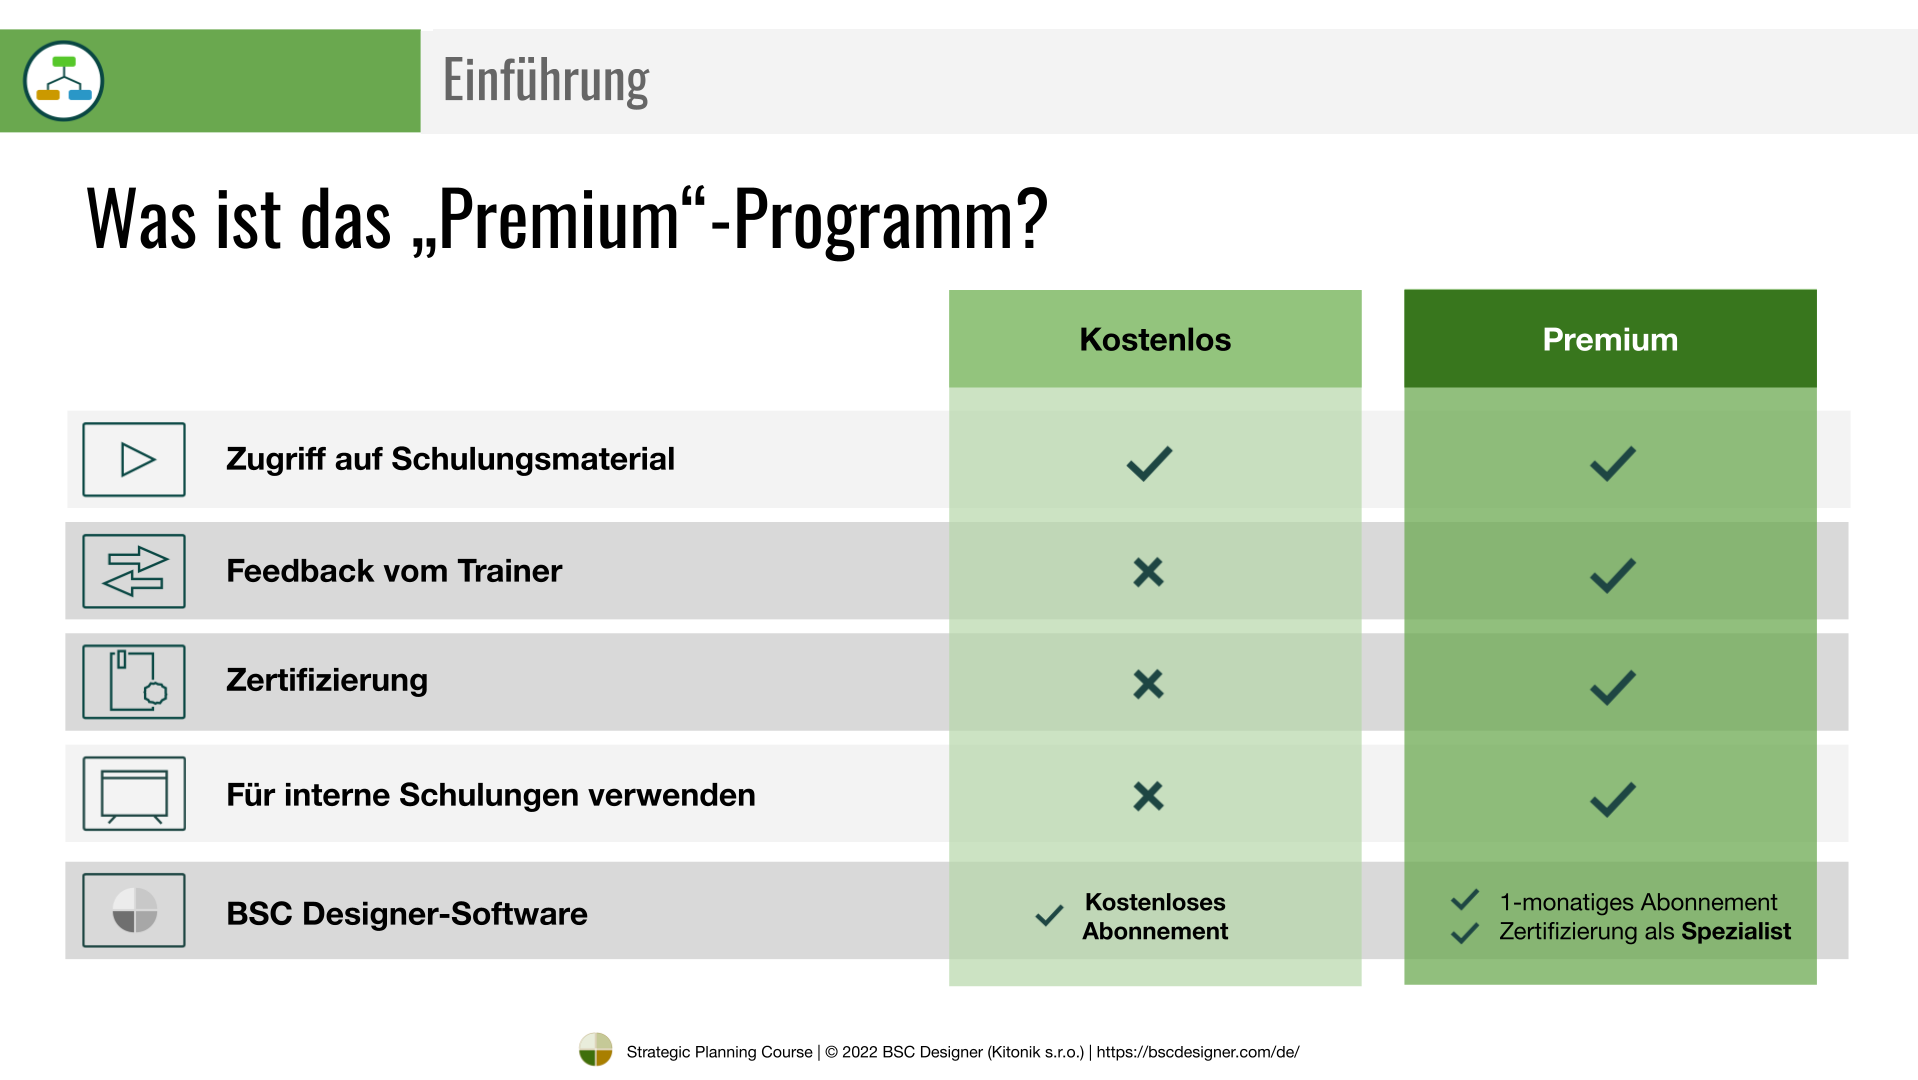 Premium-Programm vs. Kostenloses Programm